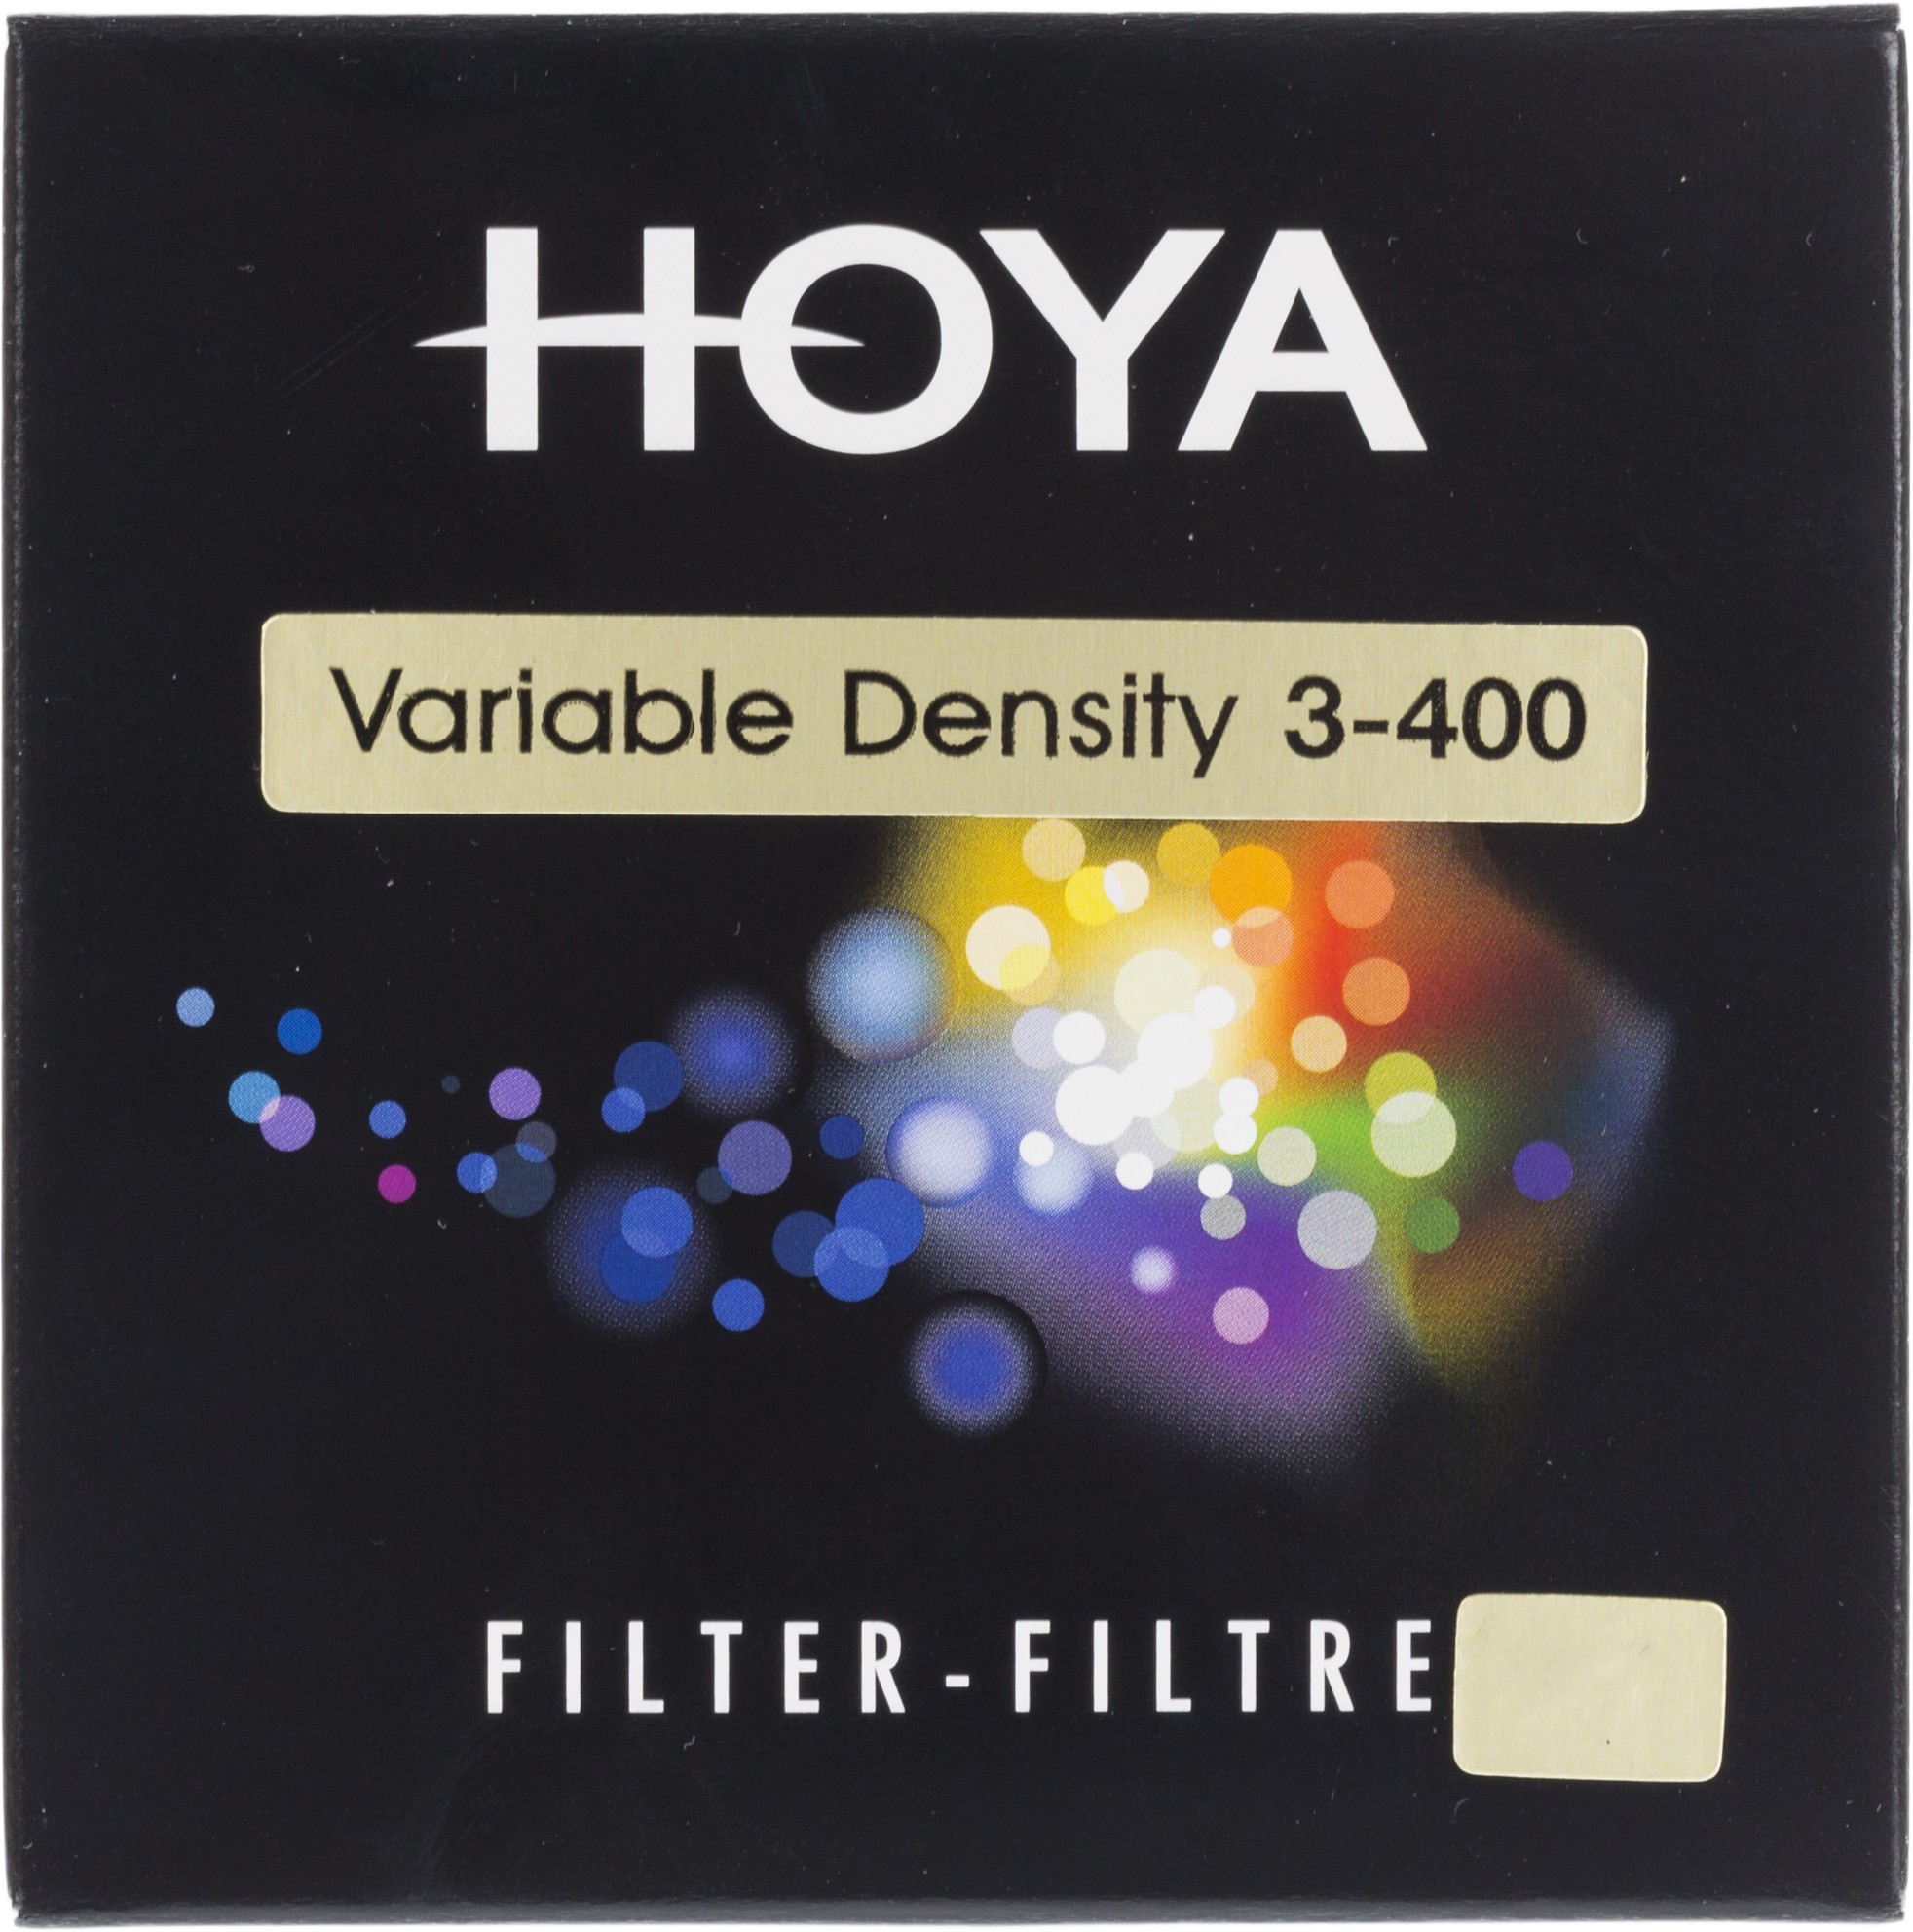 HOYA FILTERS 450350